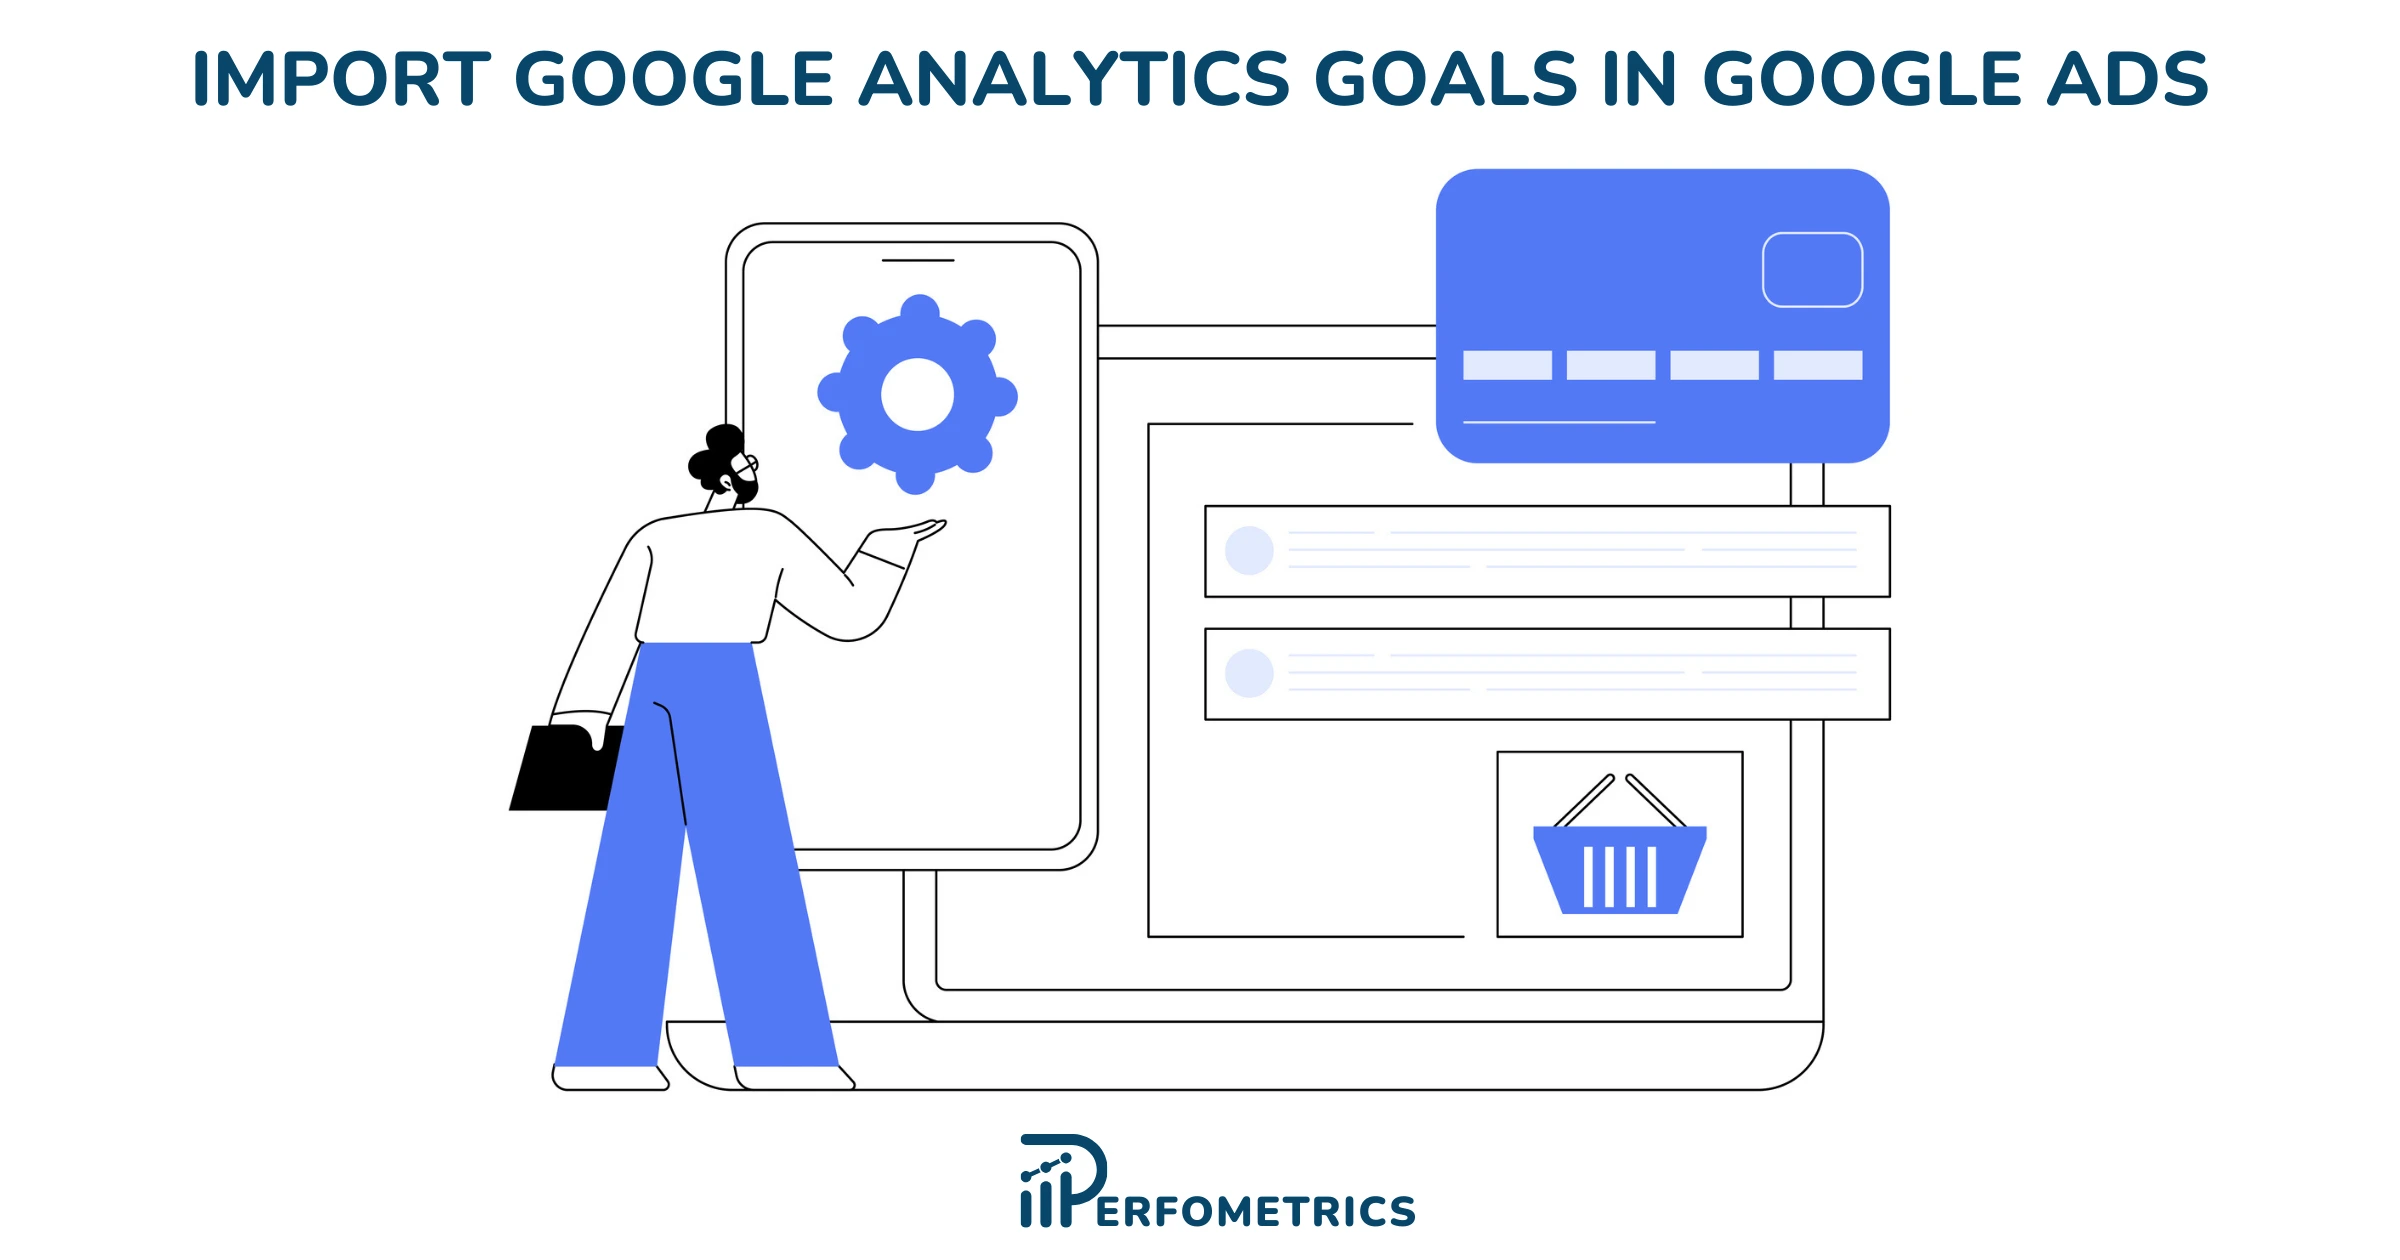 Import Google Analytics Goals in Google Ads